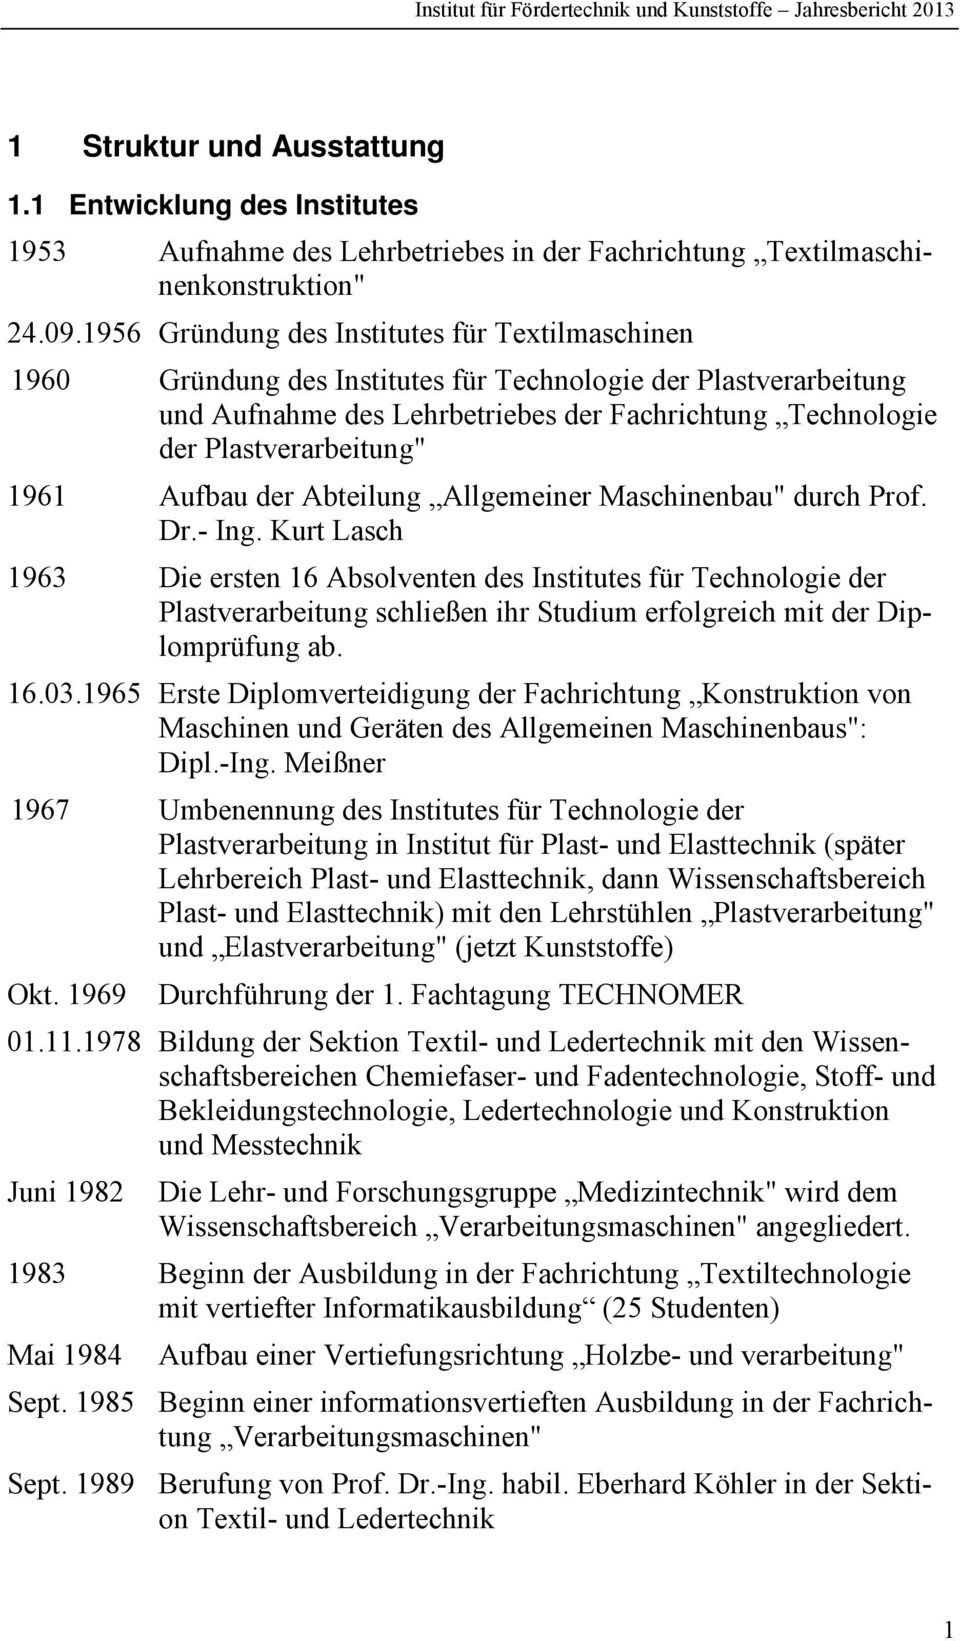 1961 Aufbau der Abteilung Allgemeiner Maschinenbau" durch Prof. Dr.- Ing.